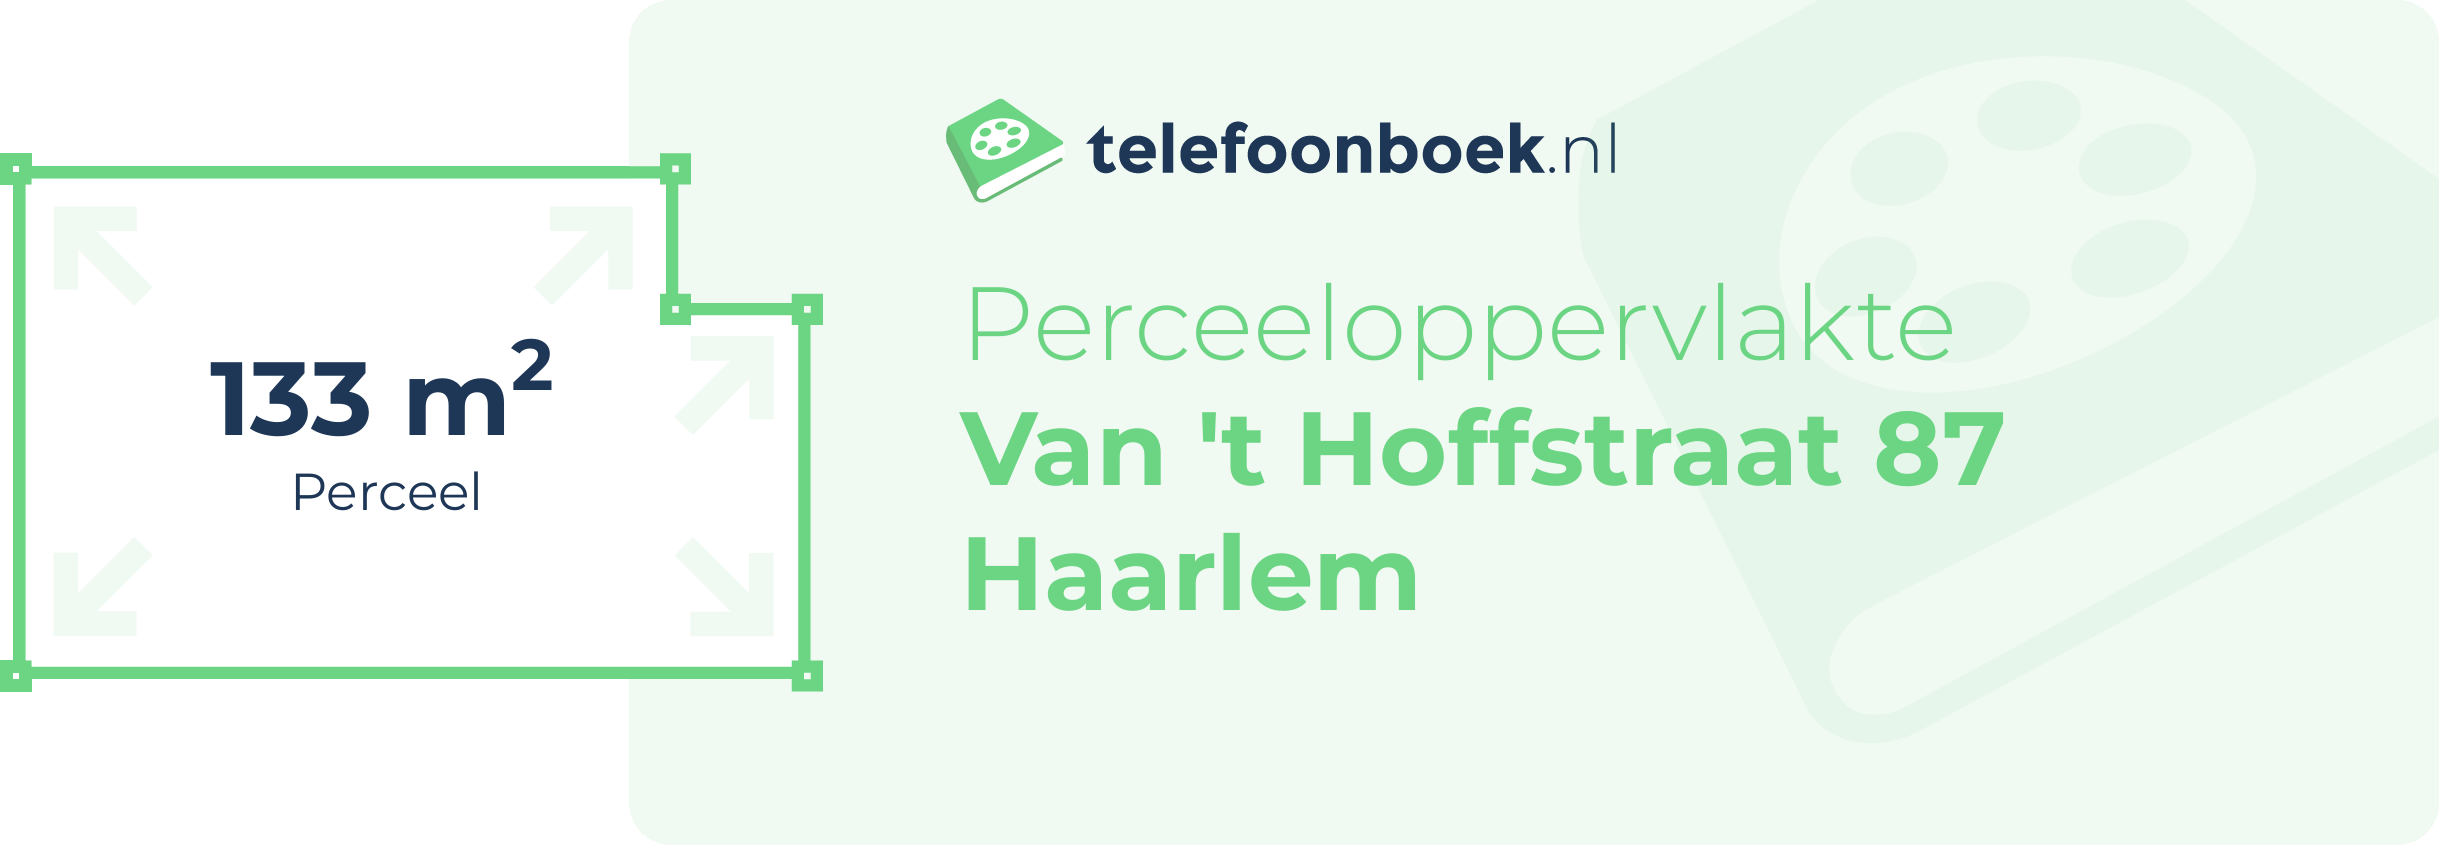 Perceeloppervlakte Van 't Hoffstraat 87 Haarlem